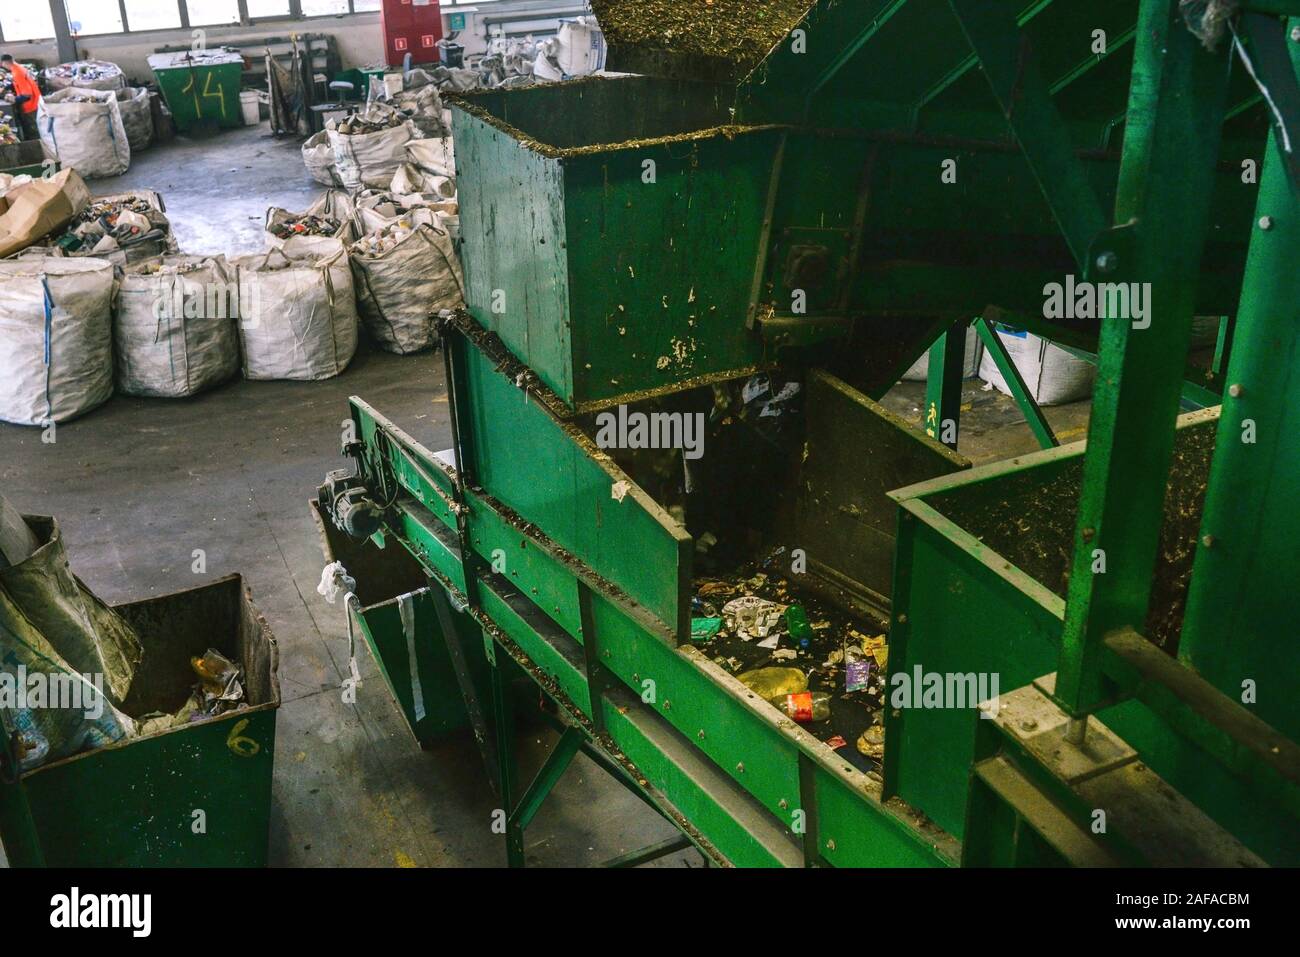 Nastro trasportatore in un garbage impianto di riciclaggio. Attrezzature per la cernita dei rifiuti. Il concetto di gestione dei rifiuti, gestione, il riutilizzo, il riciclaggio e il recupero. Foto Stock